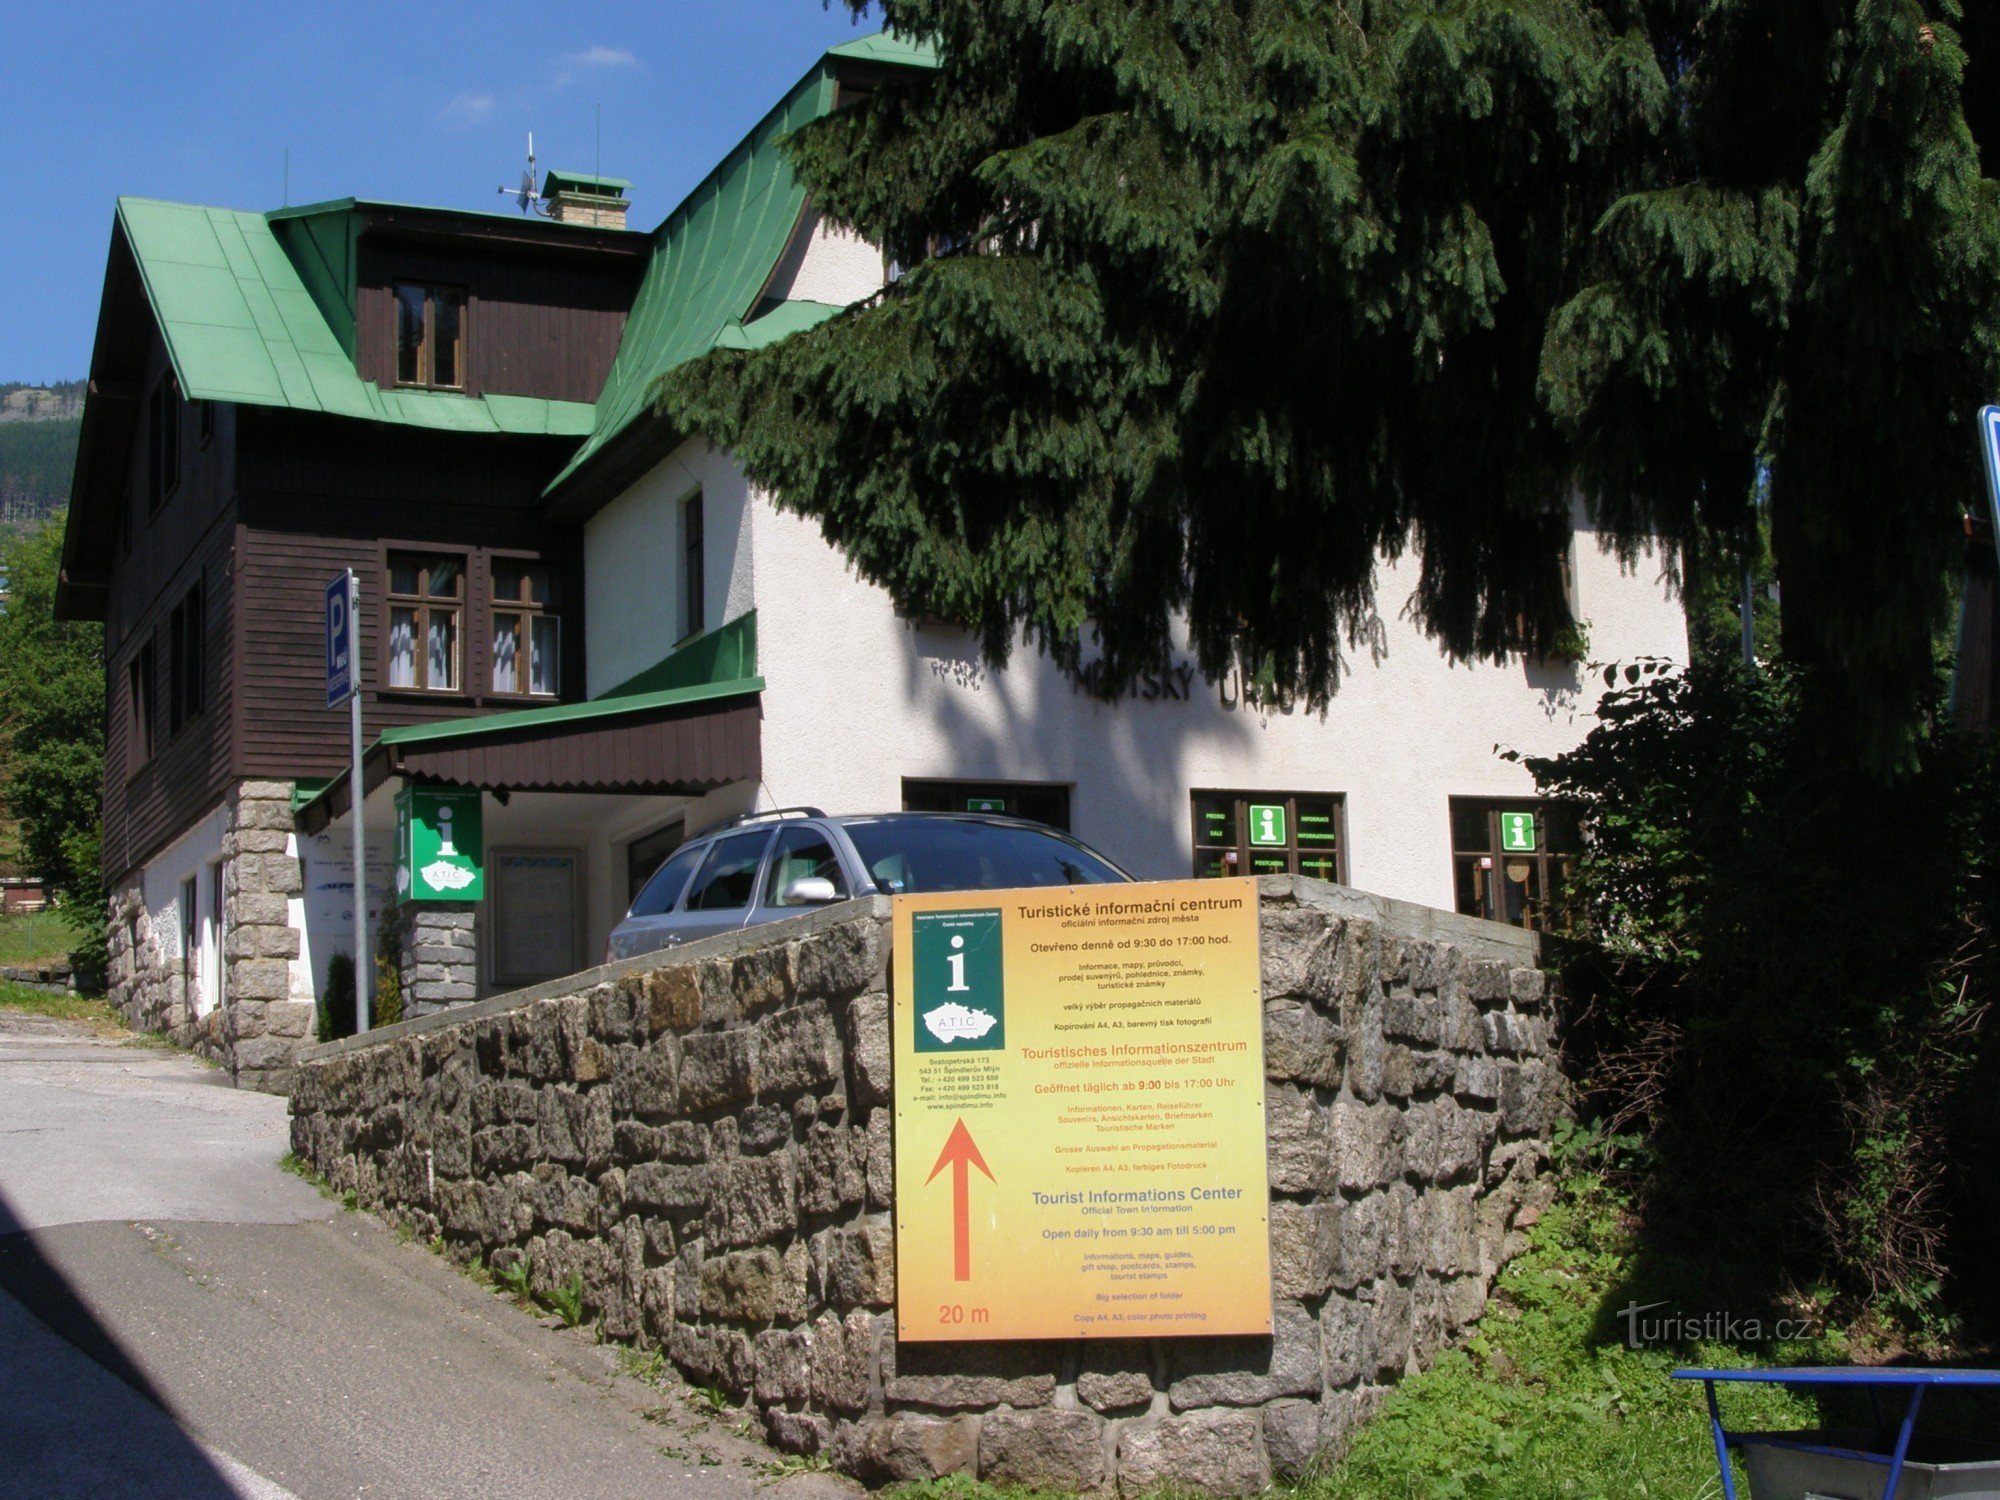 Špindlerův Mlýn - centro de información turística - año 2015